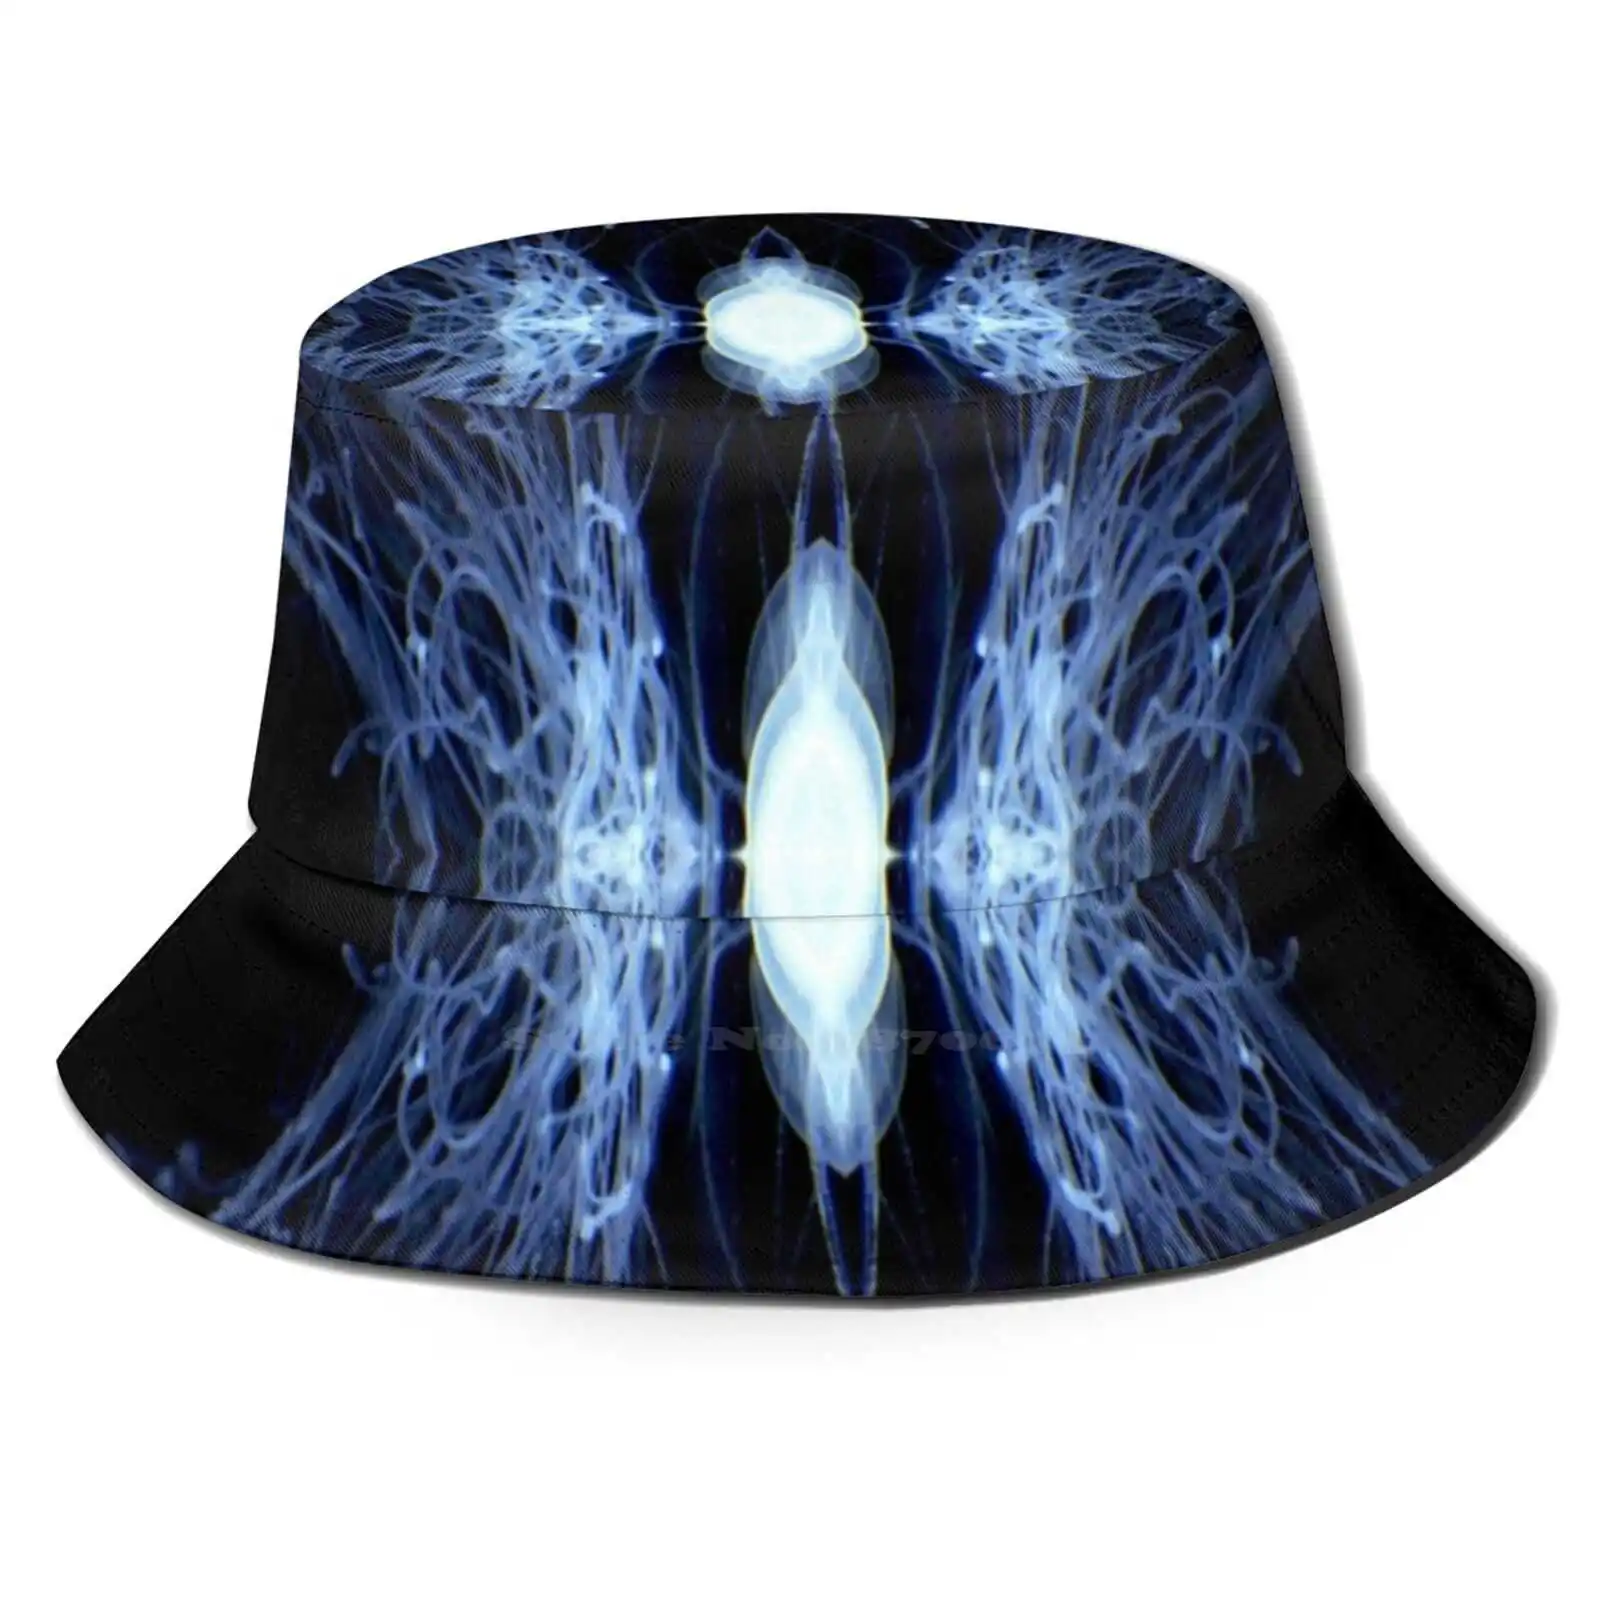 

Шляпа за Вселенной Корейская женская Солнцезащитная шляпа Панама Вселенная Космос цифровое искусство Медуза Красивая удивительная темная...